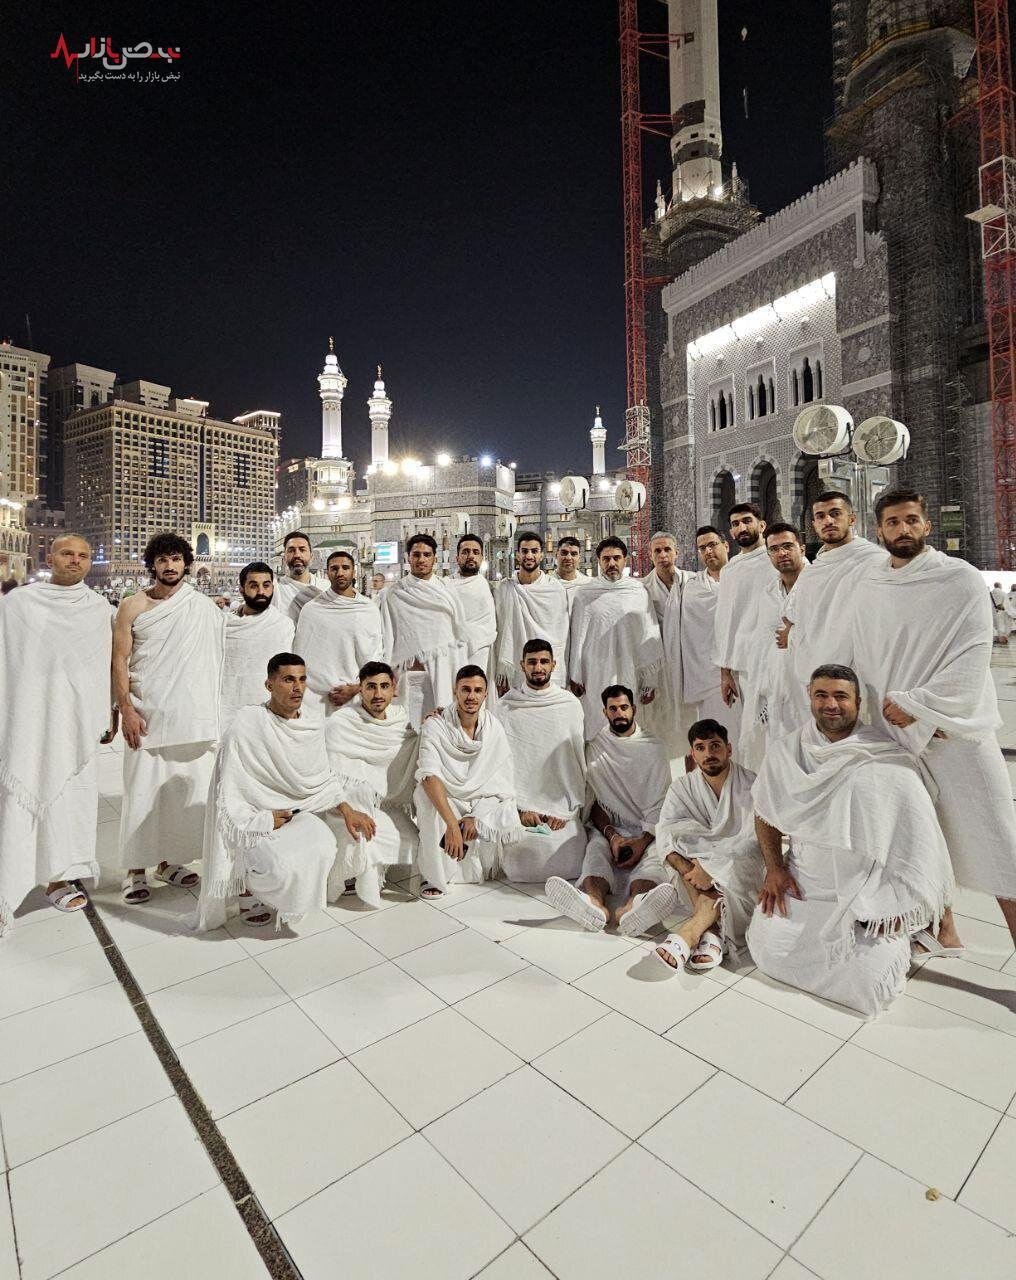 بازیکنان پرسپولیس با لباس احرام در مکه+ عکس